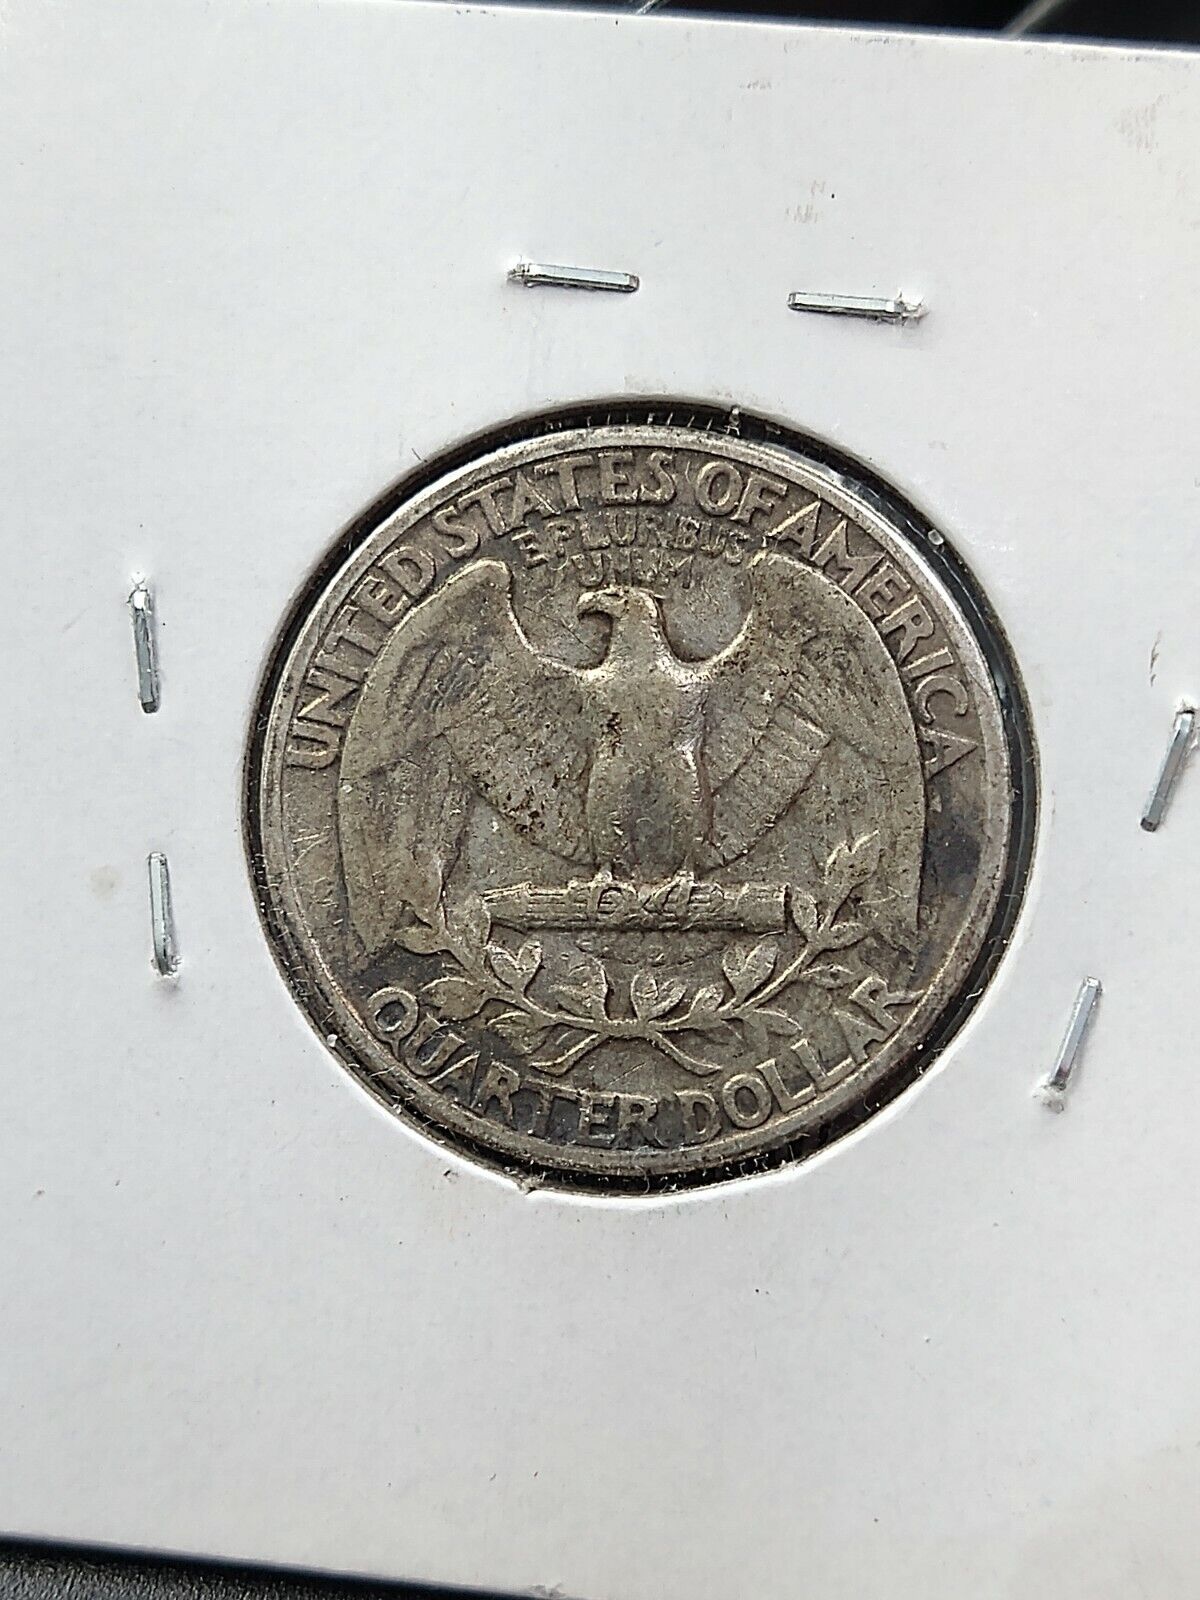 1932 P Washington Silver Quarter Coin VG Very Good Circ Light Motto Variety